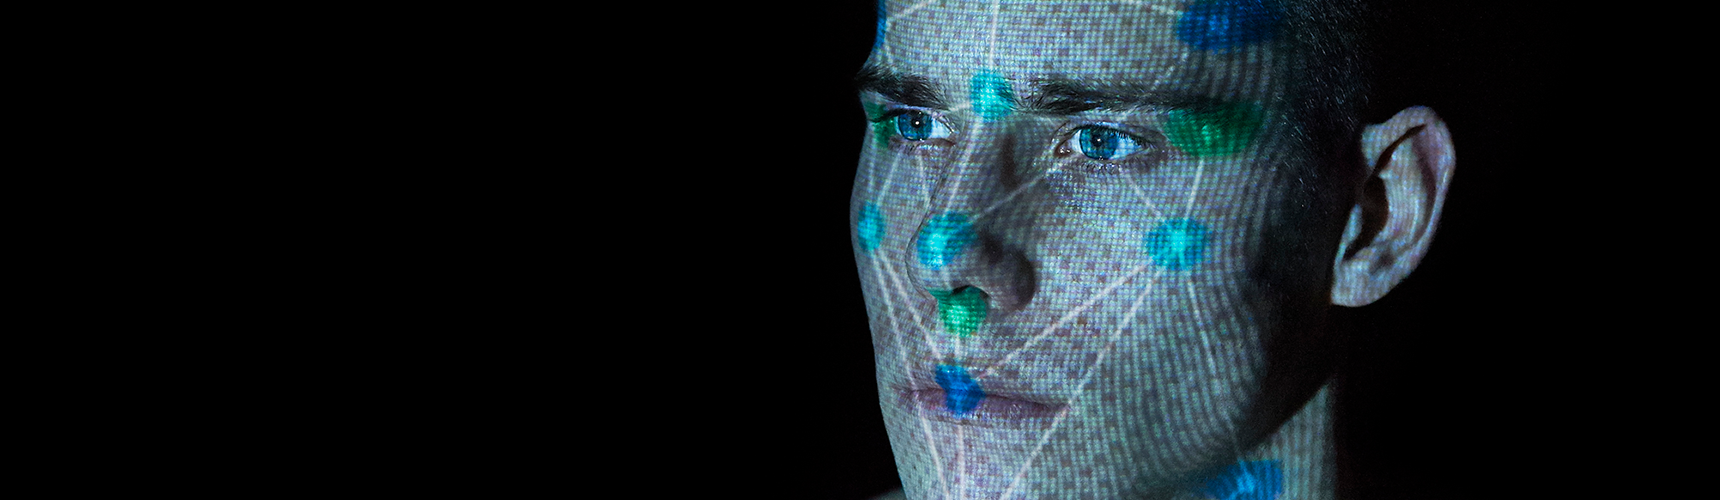 facial_biometrics